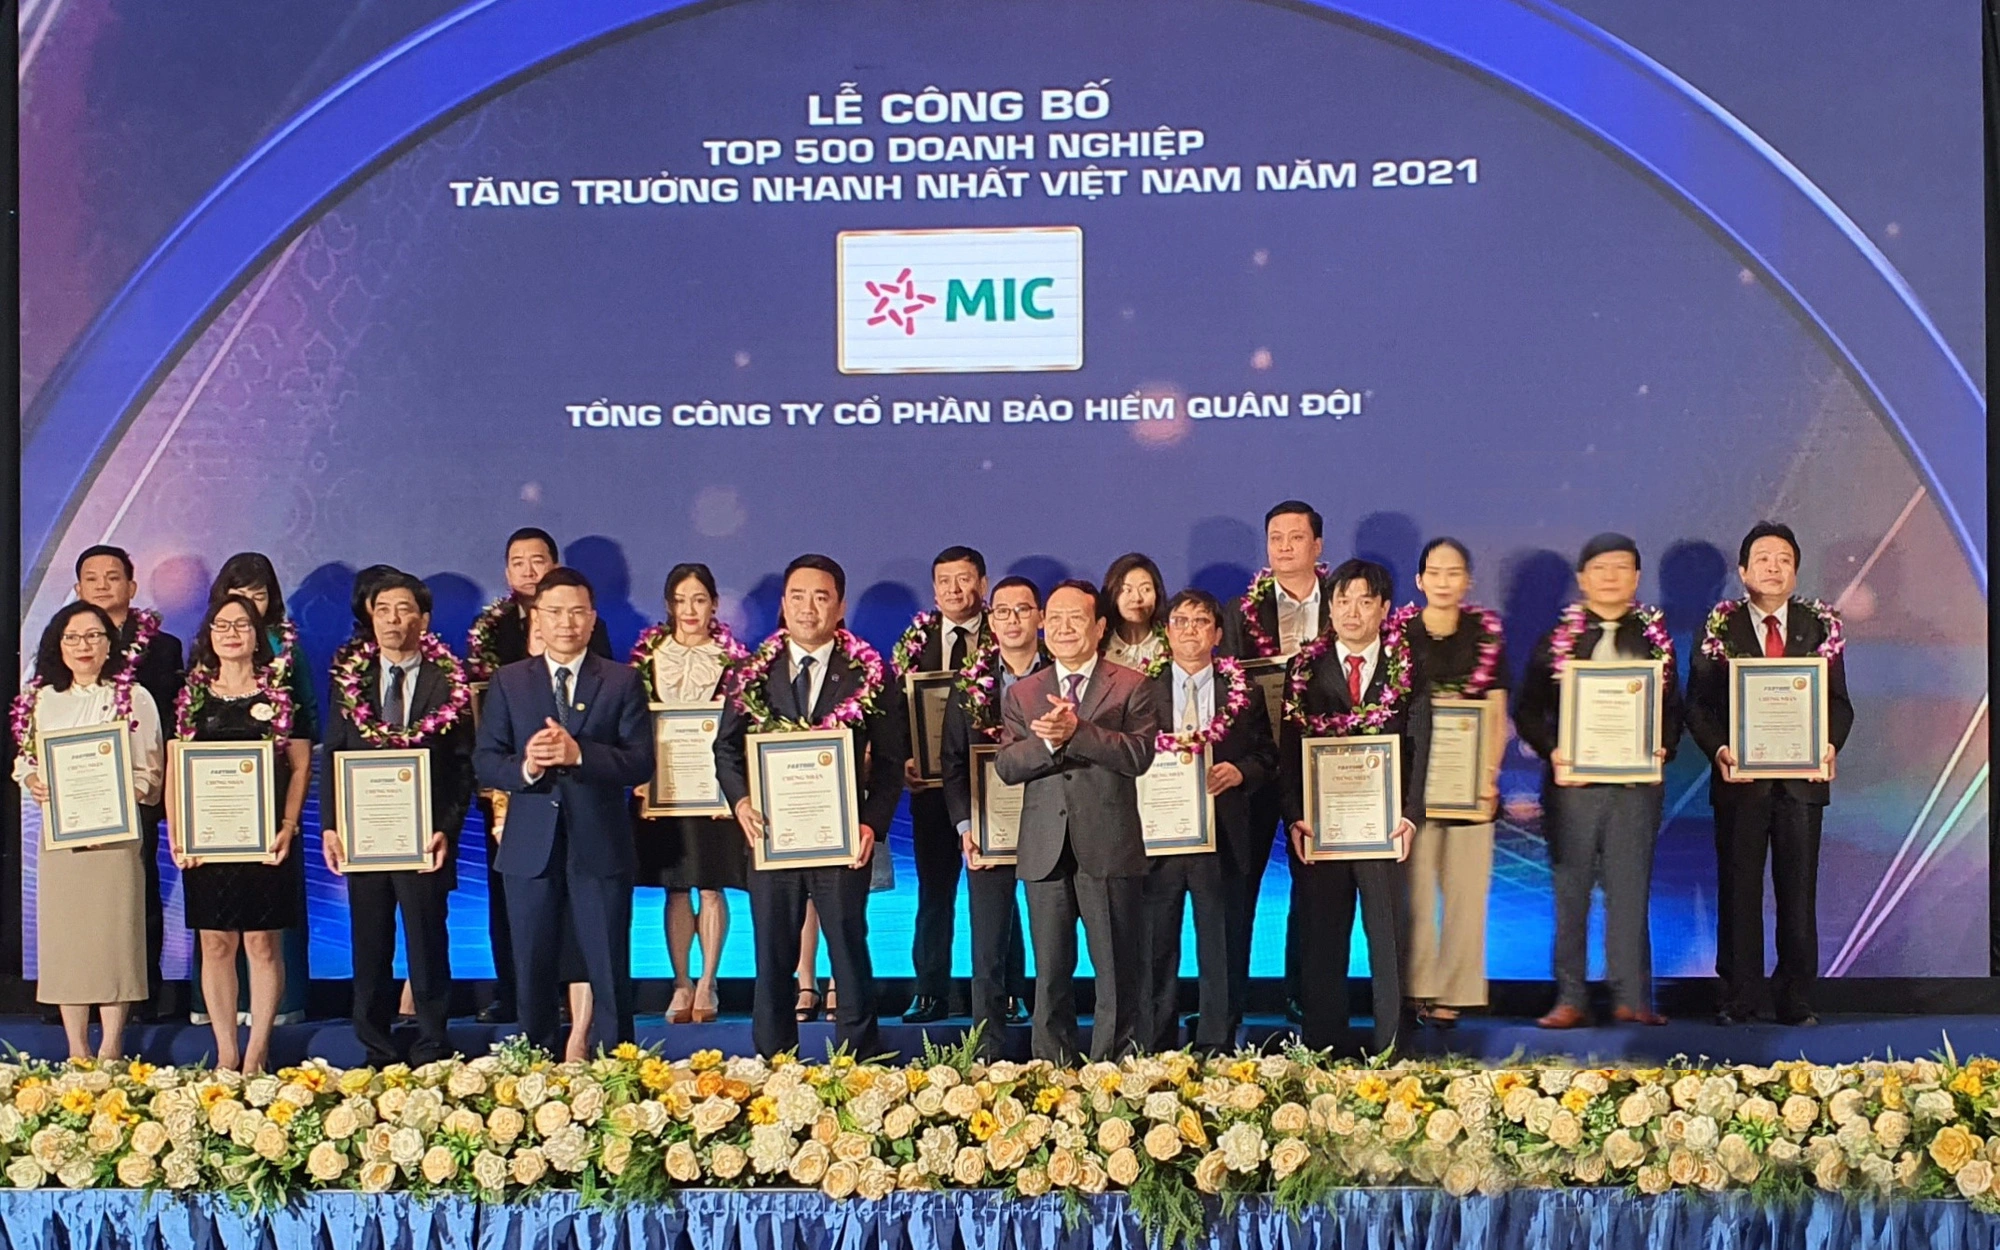 Bảo hiểm Quân đội:  Giữ vững phong độ trong Top 500 doanh nghiệp tăng trưởng nhanh nhất Việt Nam năm 2021